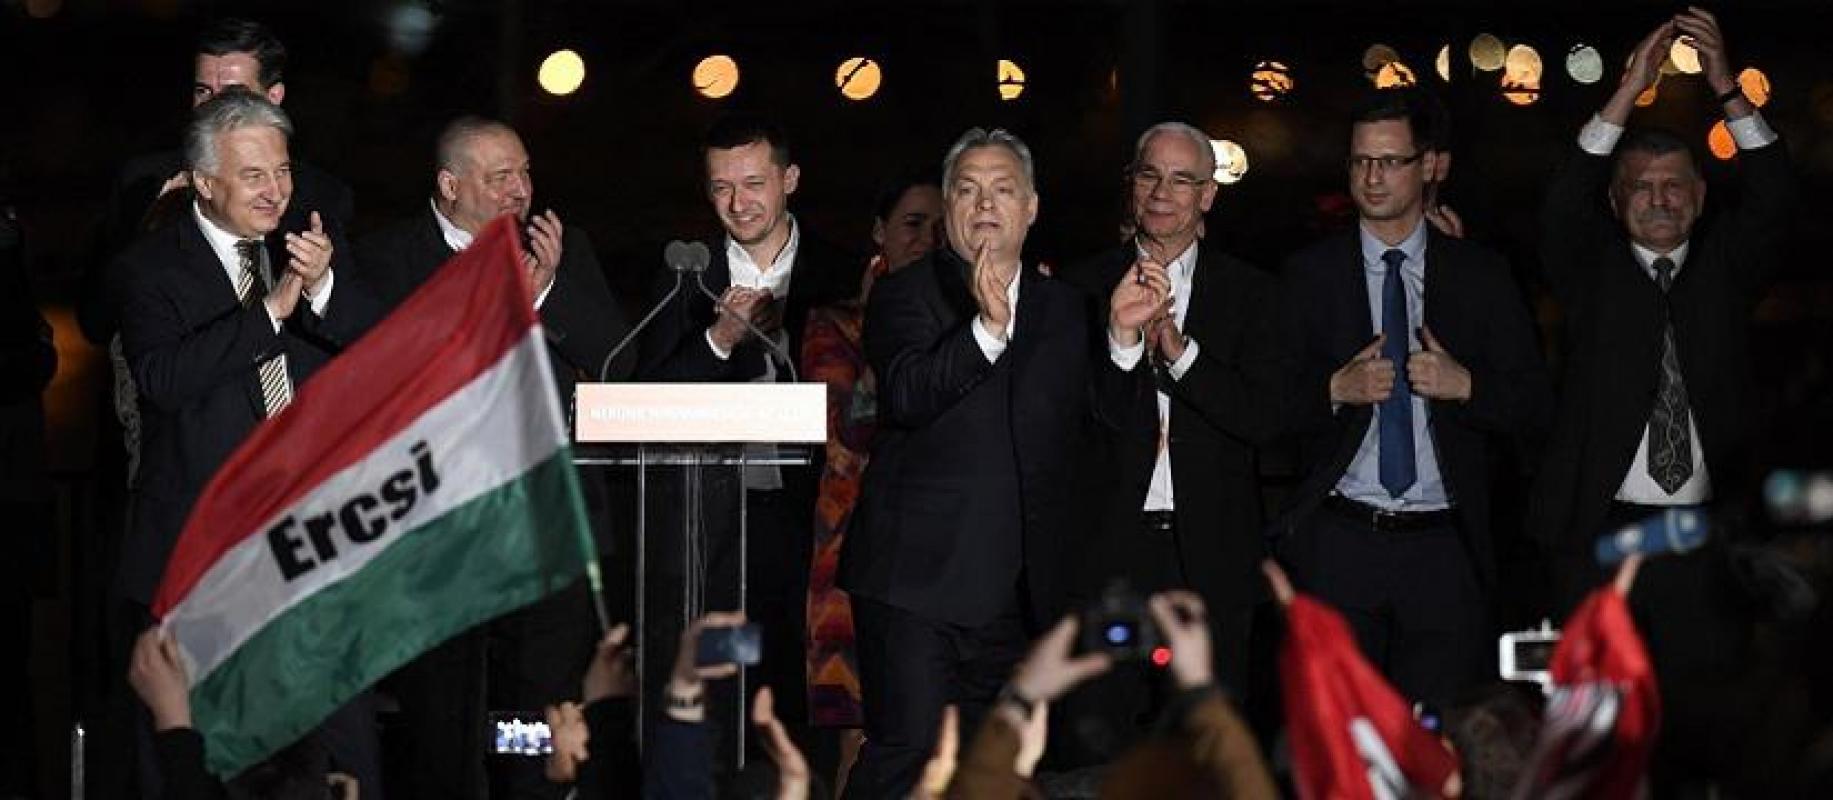 Vengrai po Fides pergalės ruošiasi išspirti lauk Sorošą ir jo NVO. Lietuviška feikinė MIP liūdi dėl Orbano pergalės